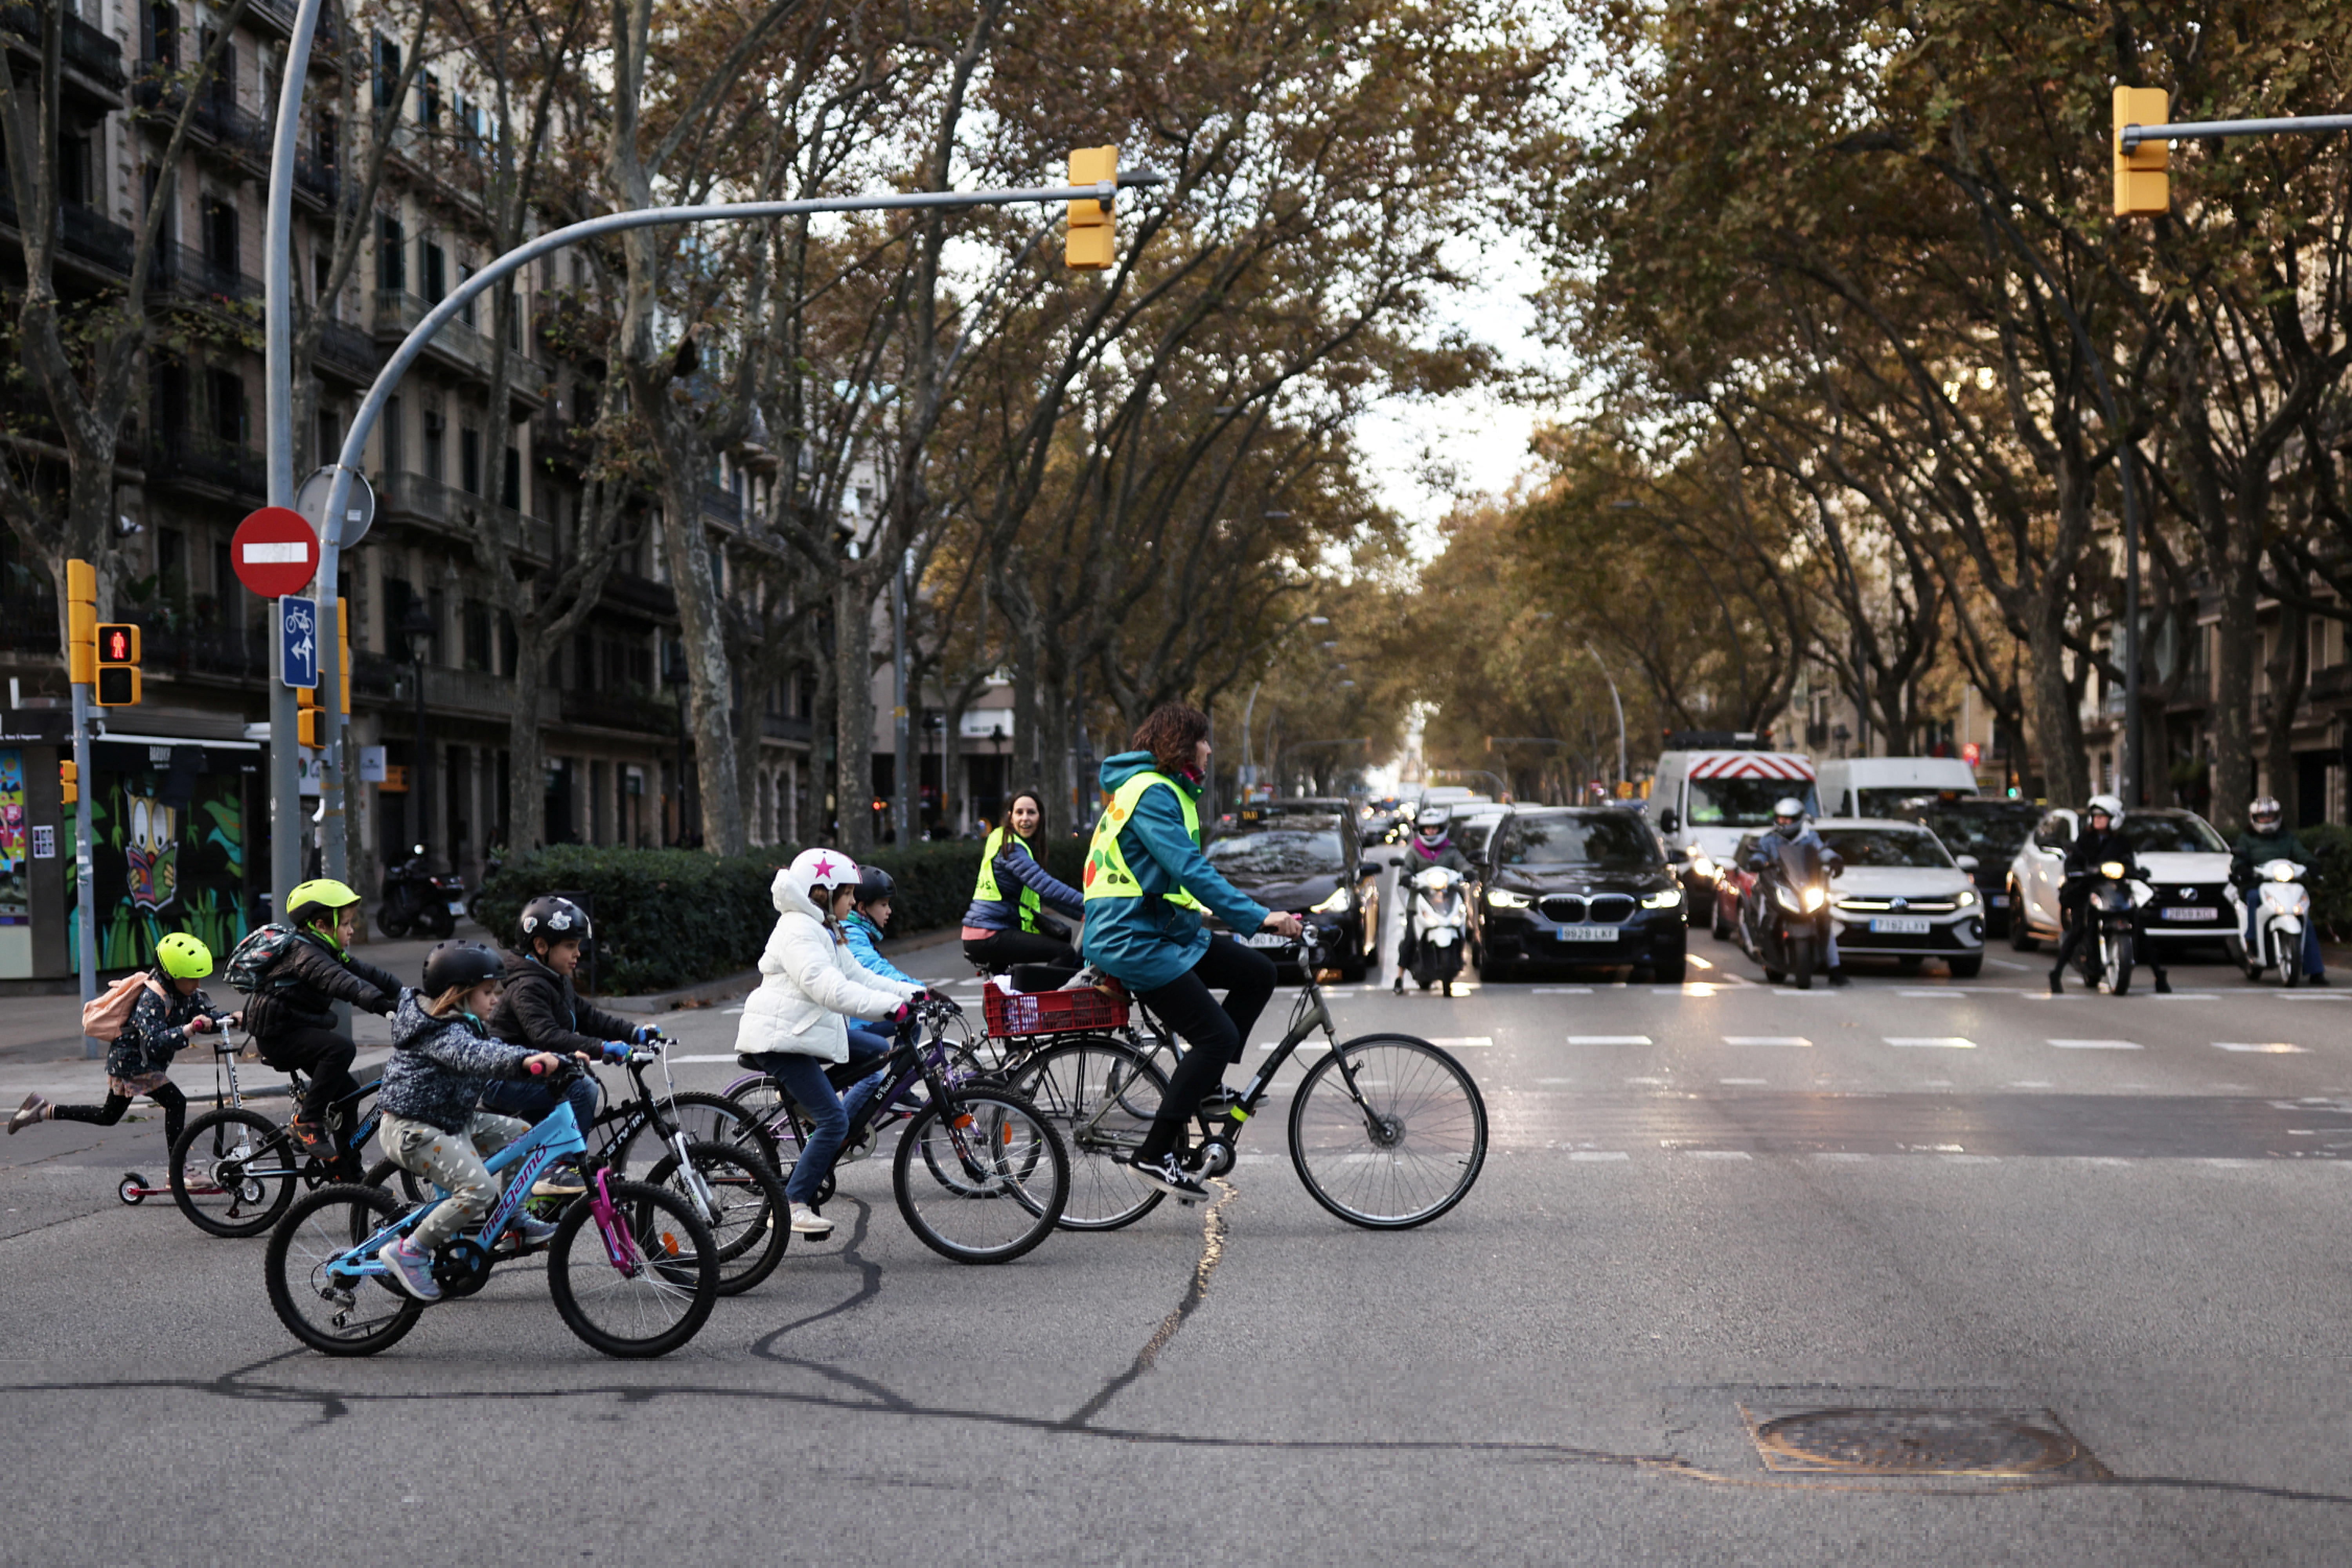 Barcelona's bike bus scheme for kids promotes green transport